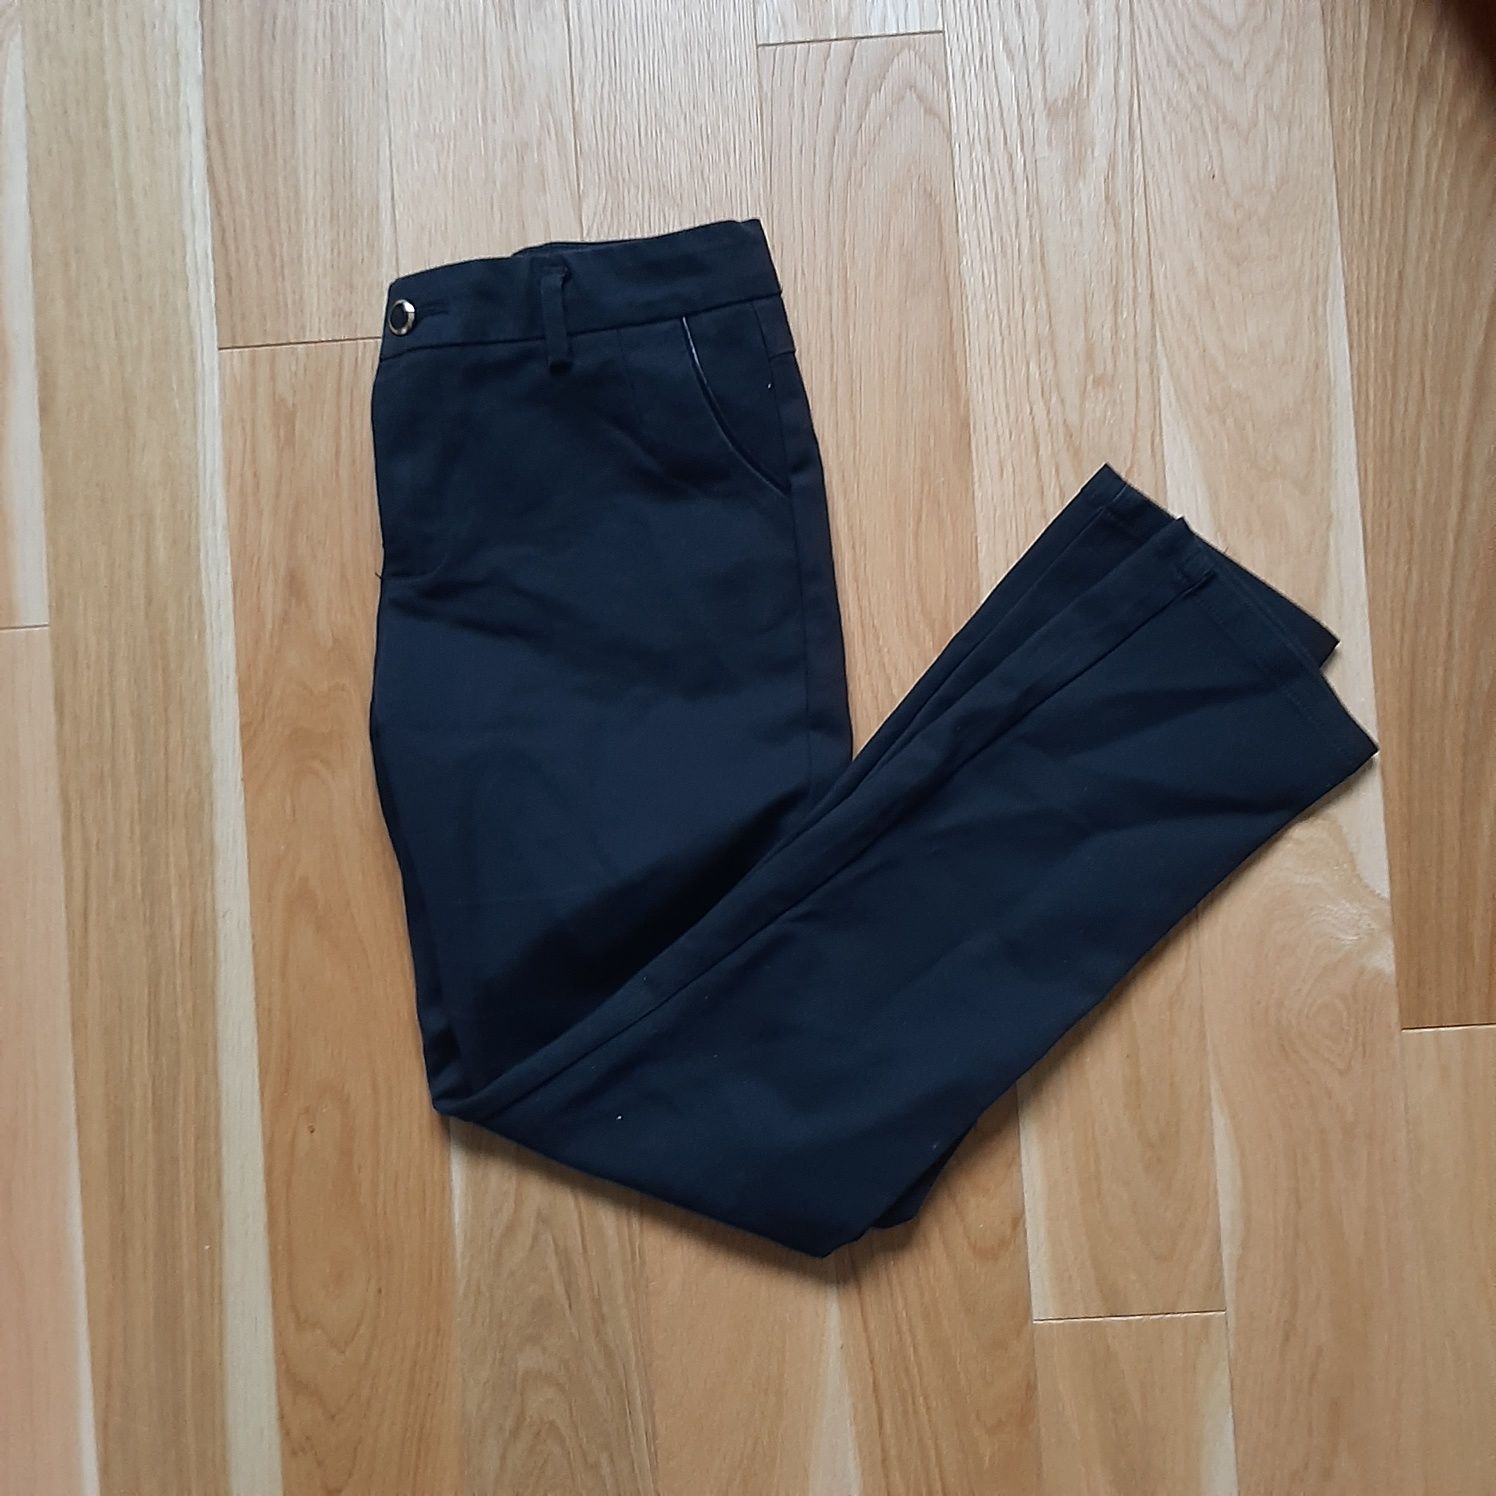 Czarne eleganckie klasyczne spodnie proste nogawki M 38 L 40 rozmiar